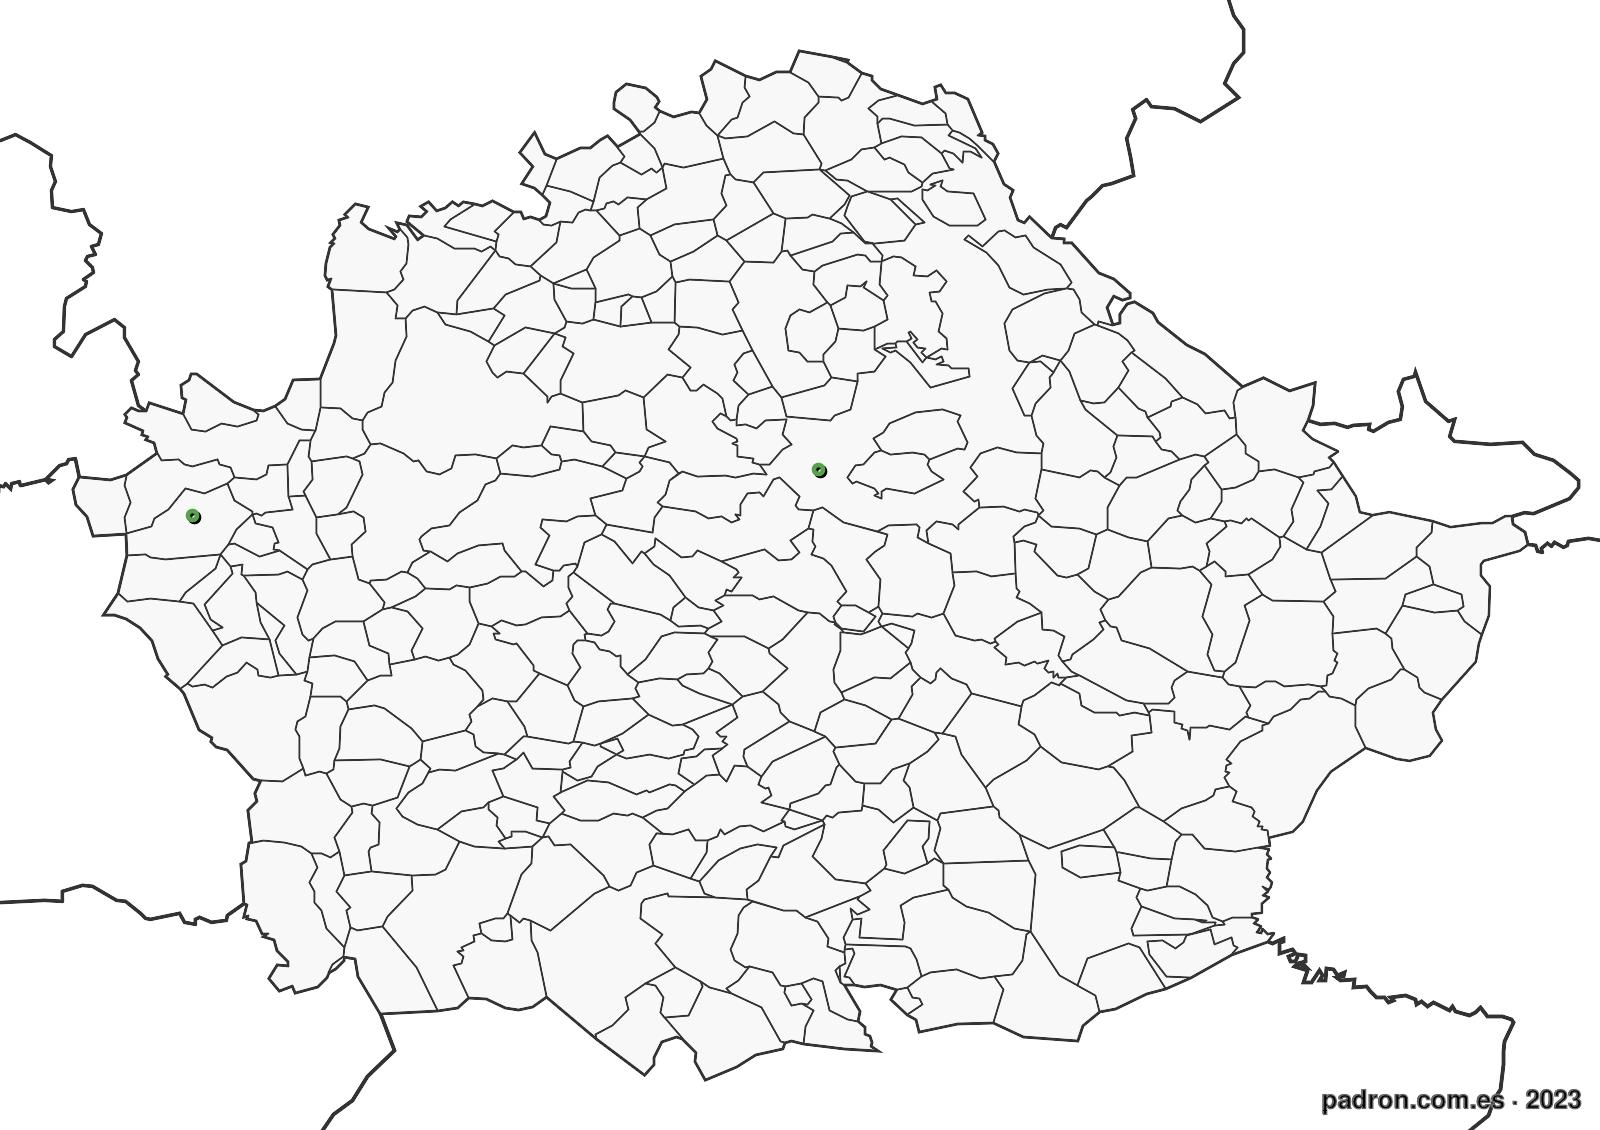 serbios en cuenca.